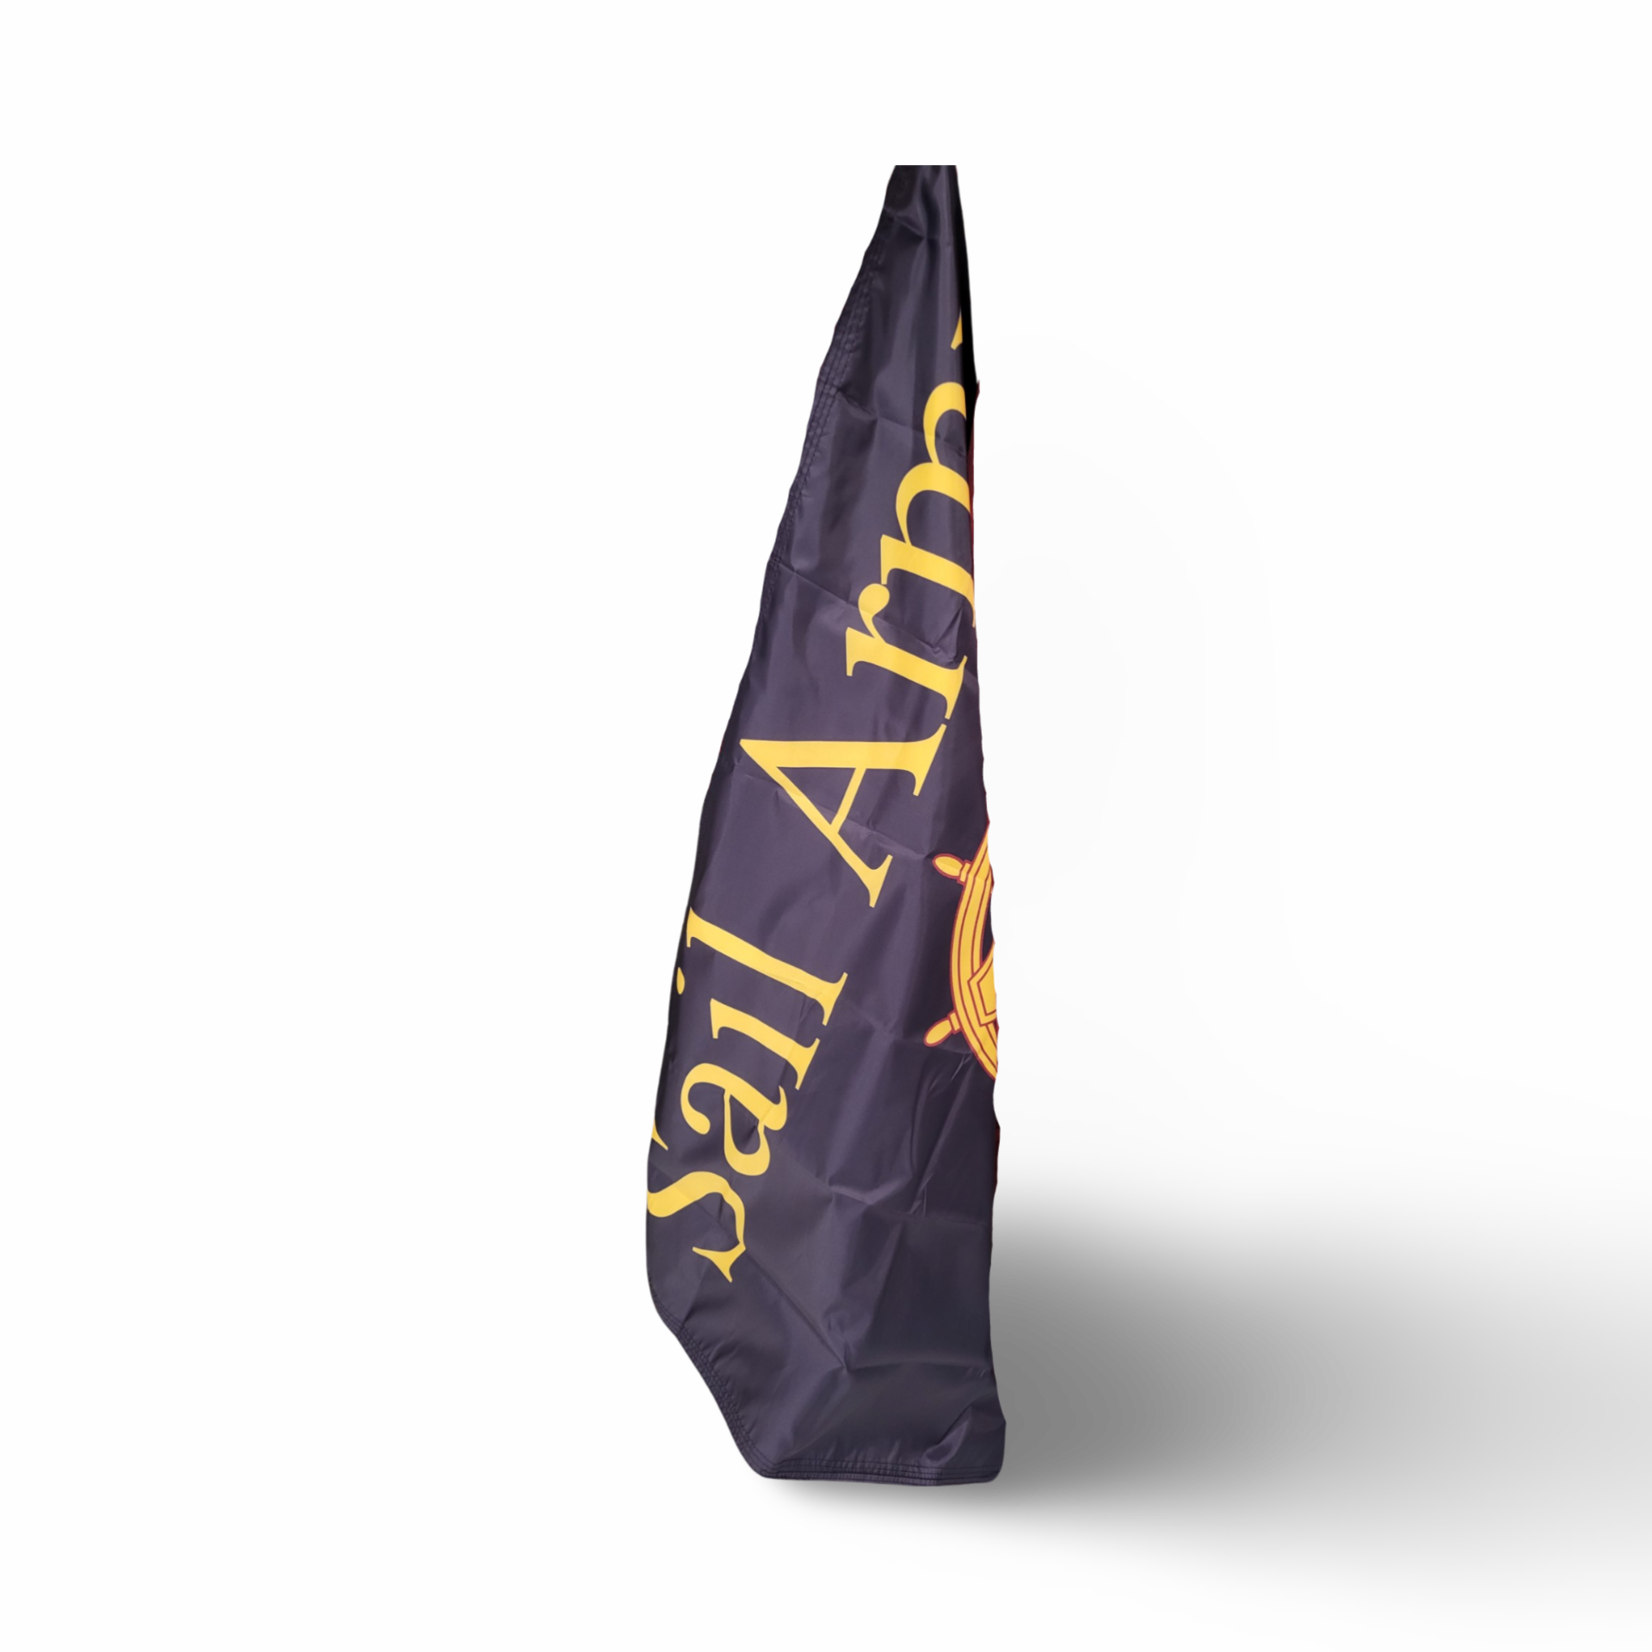 Sail Army 3x5 Flag